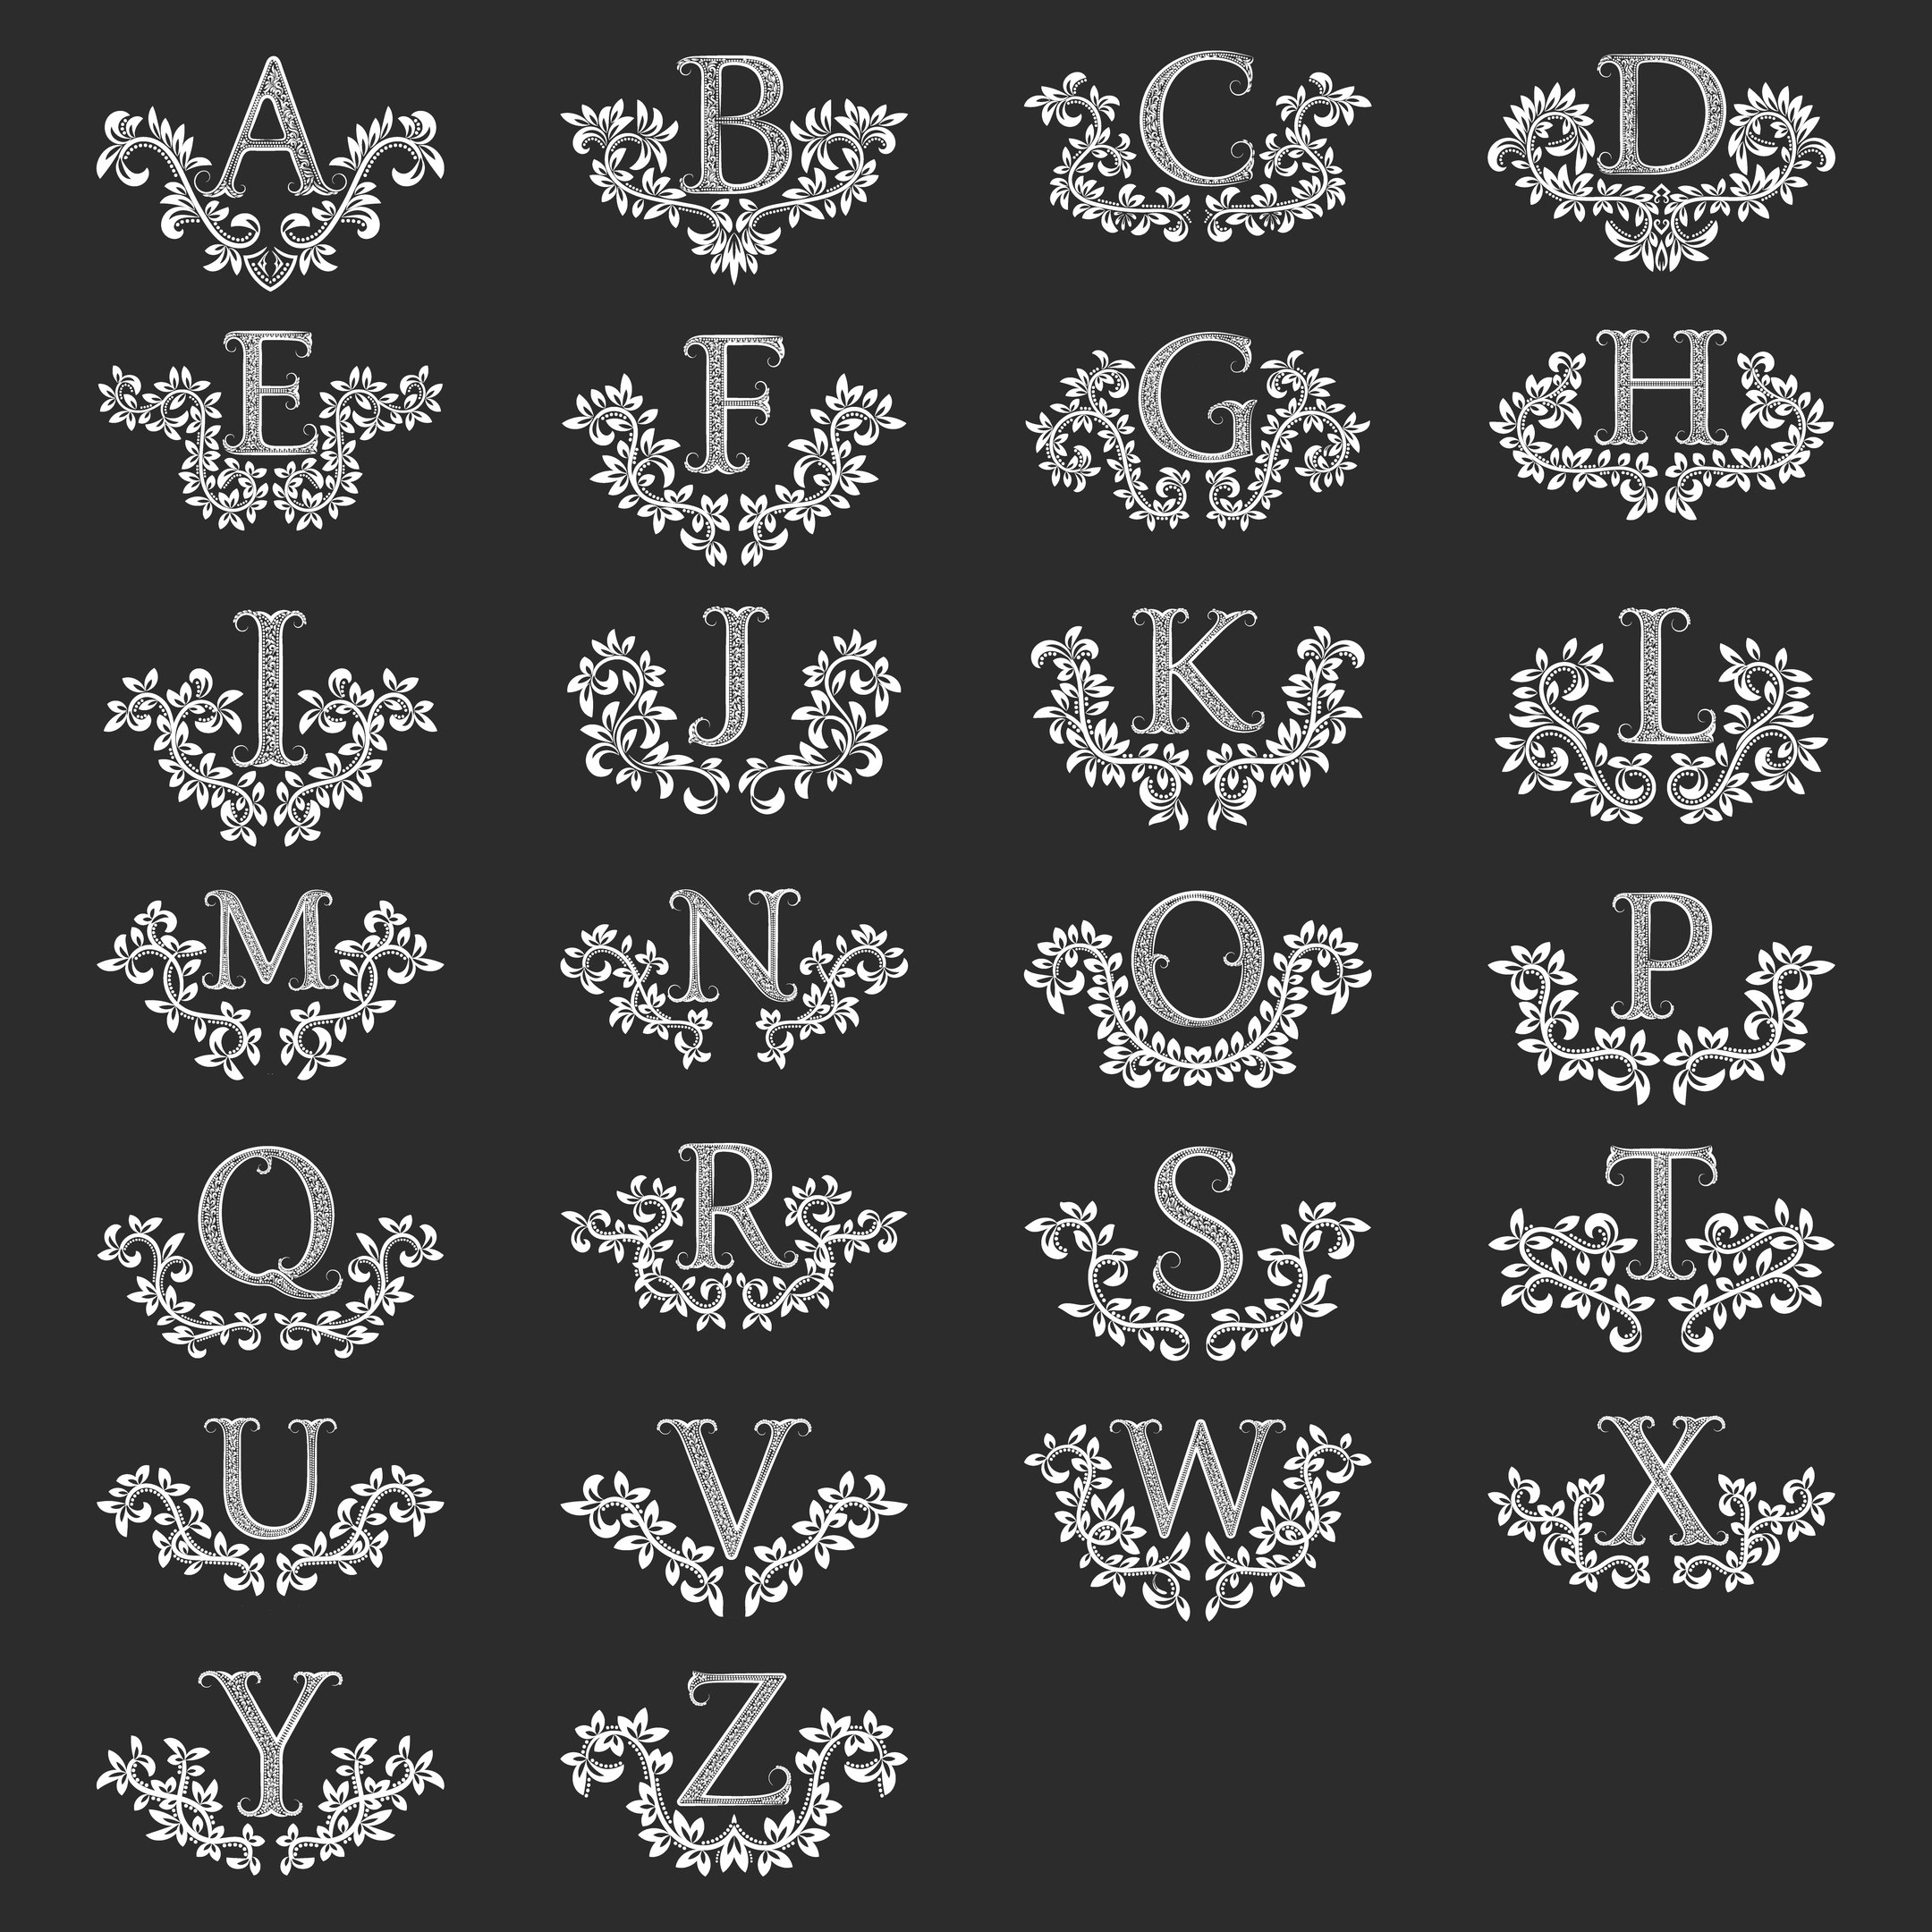 Letras del alfabeto ornamentales florales